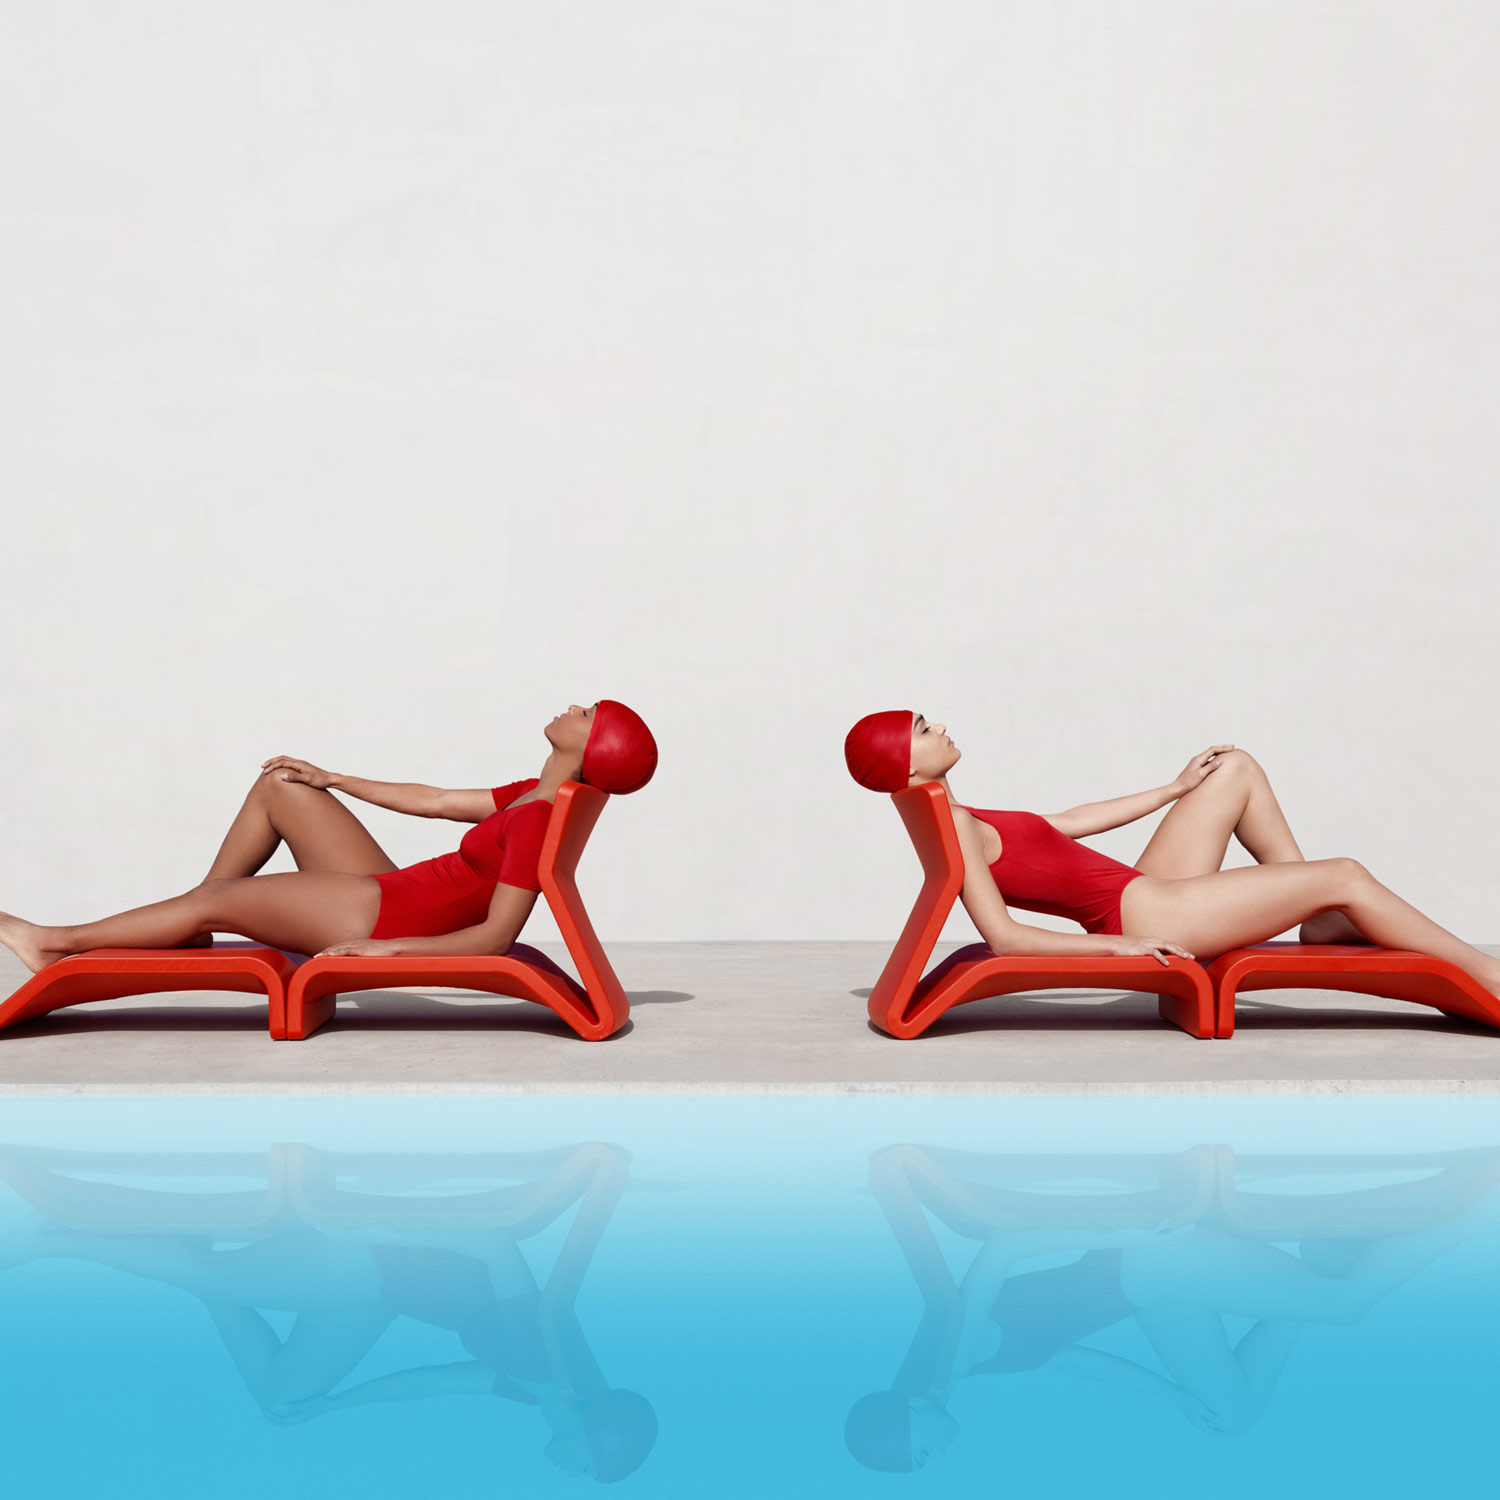 Udendørs møbler i rød fra serien Clip fra Gitz Design